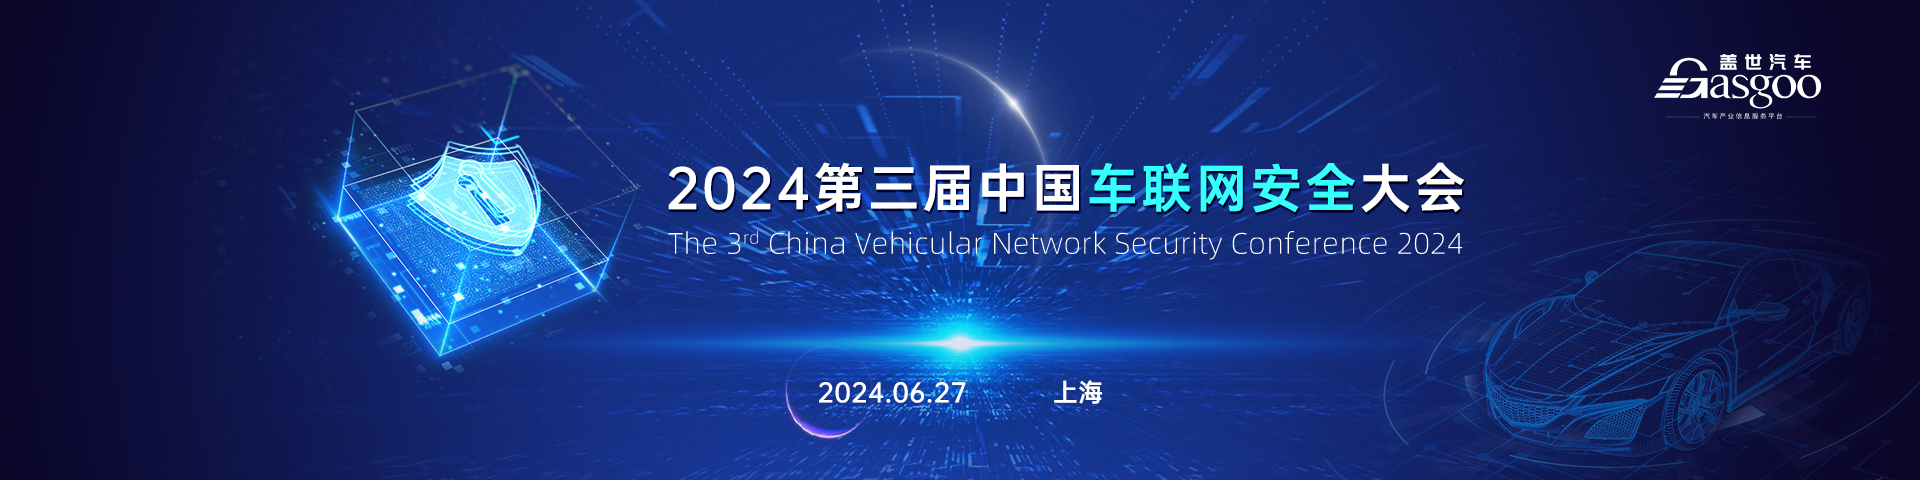 2024第三届中国车联网安全大会